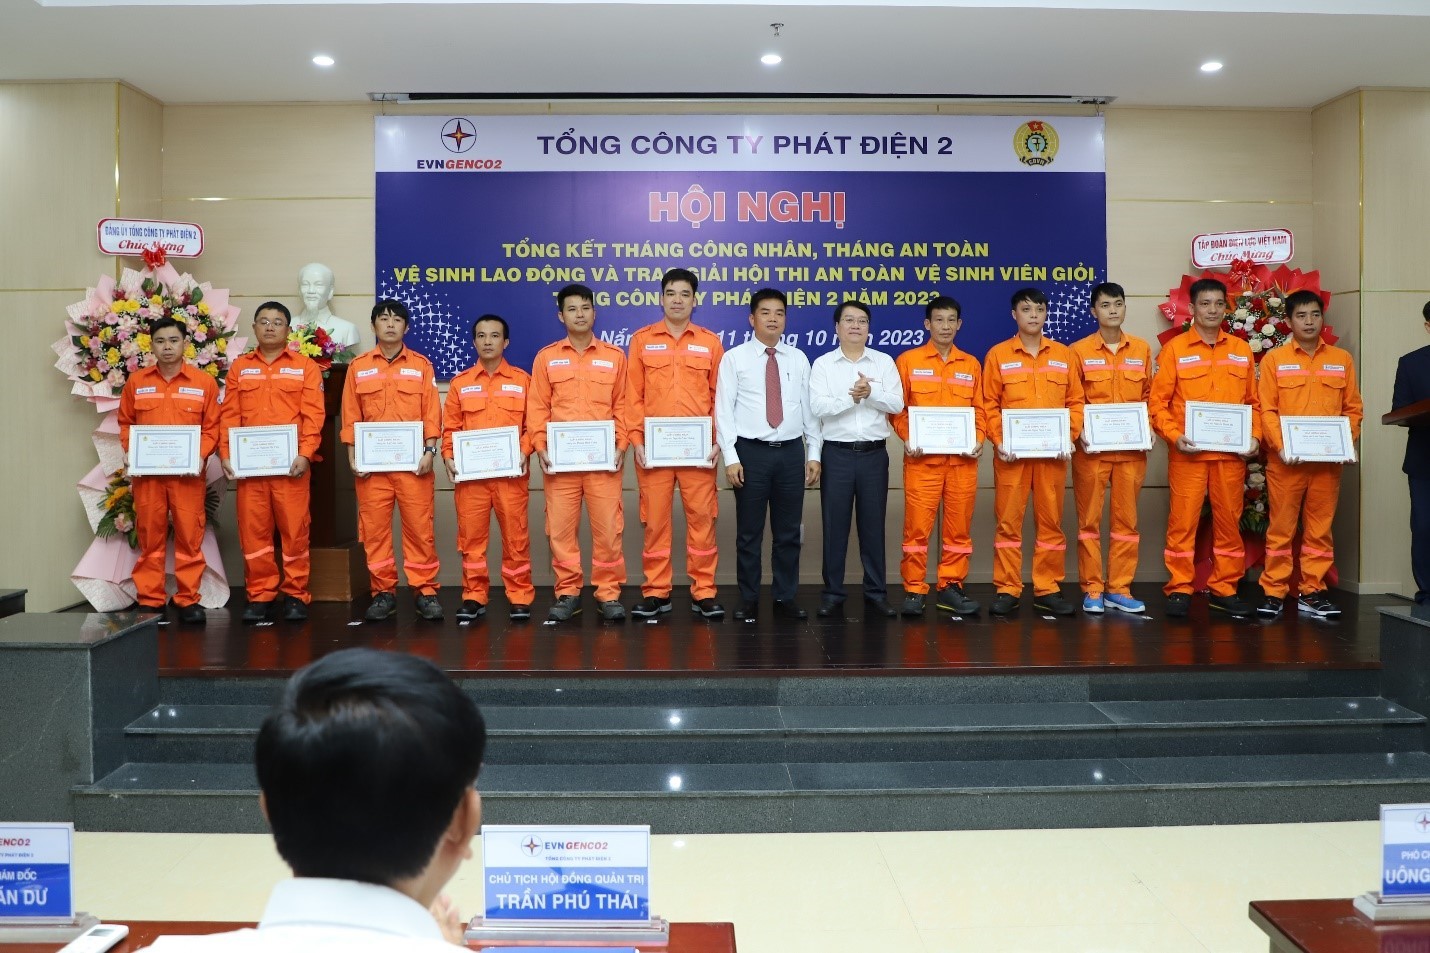 Ông Trần Văn Dư (áo trắng bên phải) và ông Nguyễn Văn Ngộ (áo trắng bên trái) trao giấy chứng nhận “An toàn vệ sinh viên giỏi năm 2023” cho các cá nhân